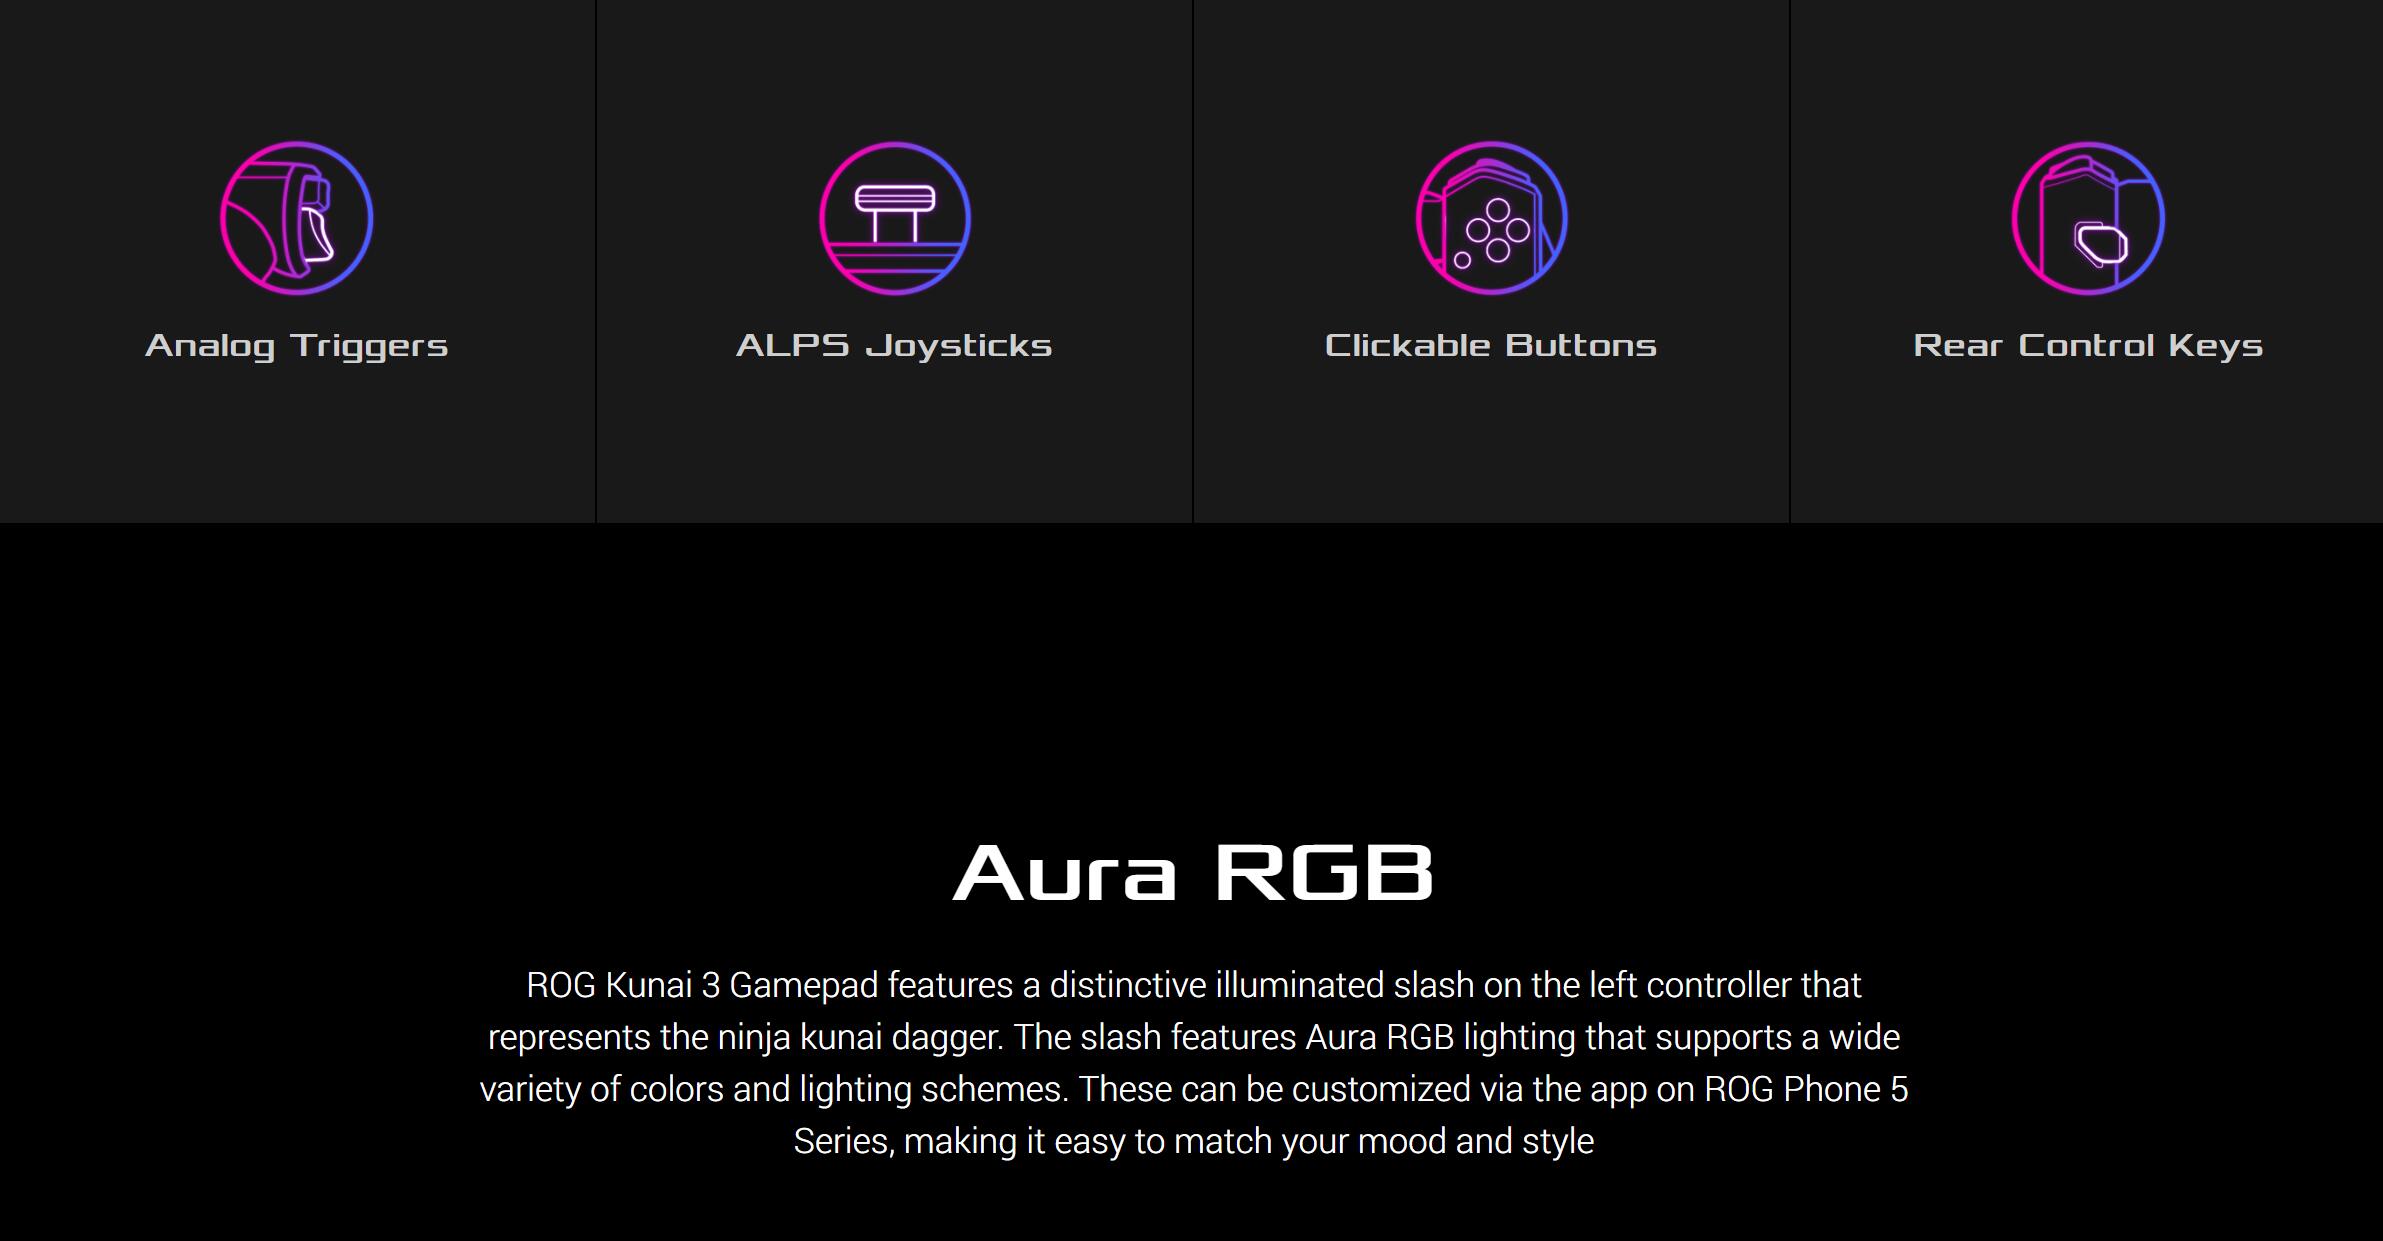 ASUS ROG Kunai 3 Gamepad For ROG Phone 5 10